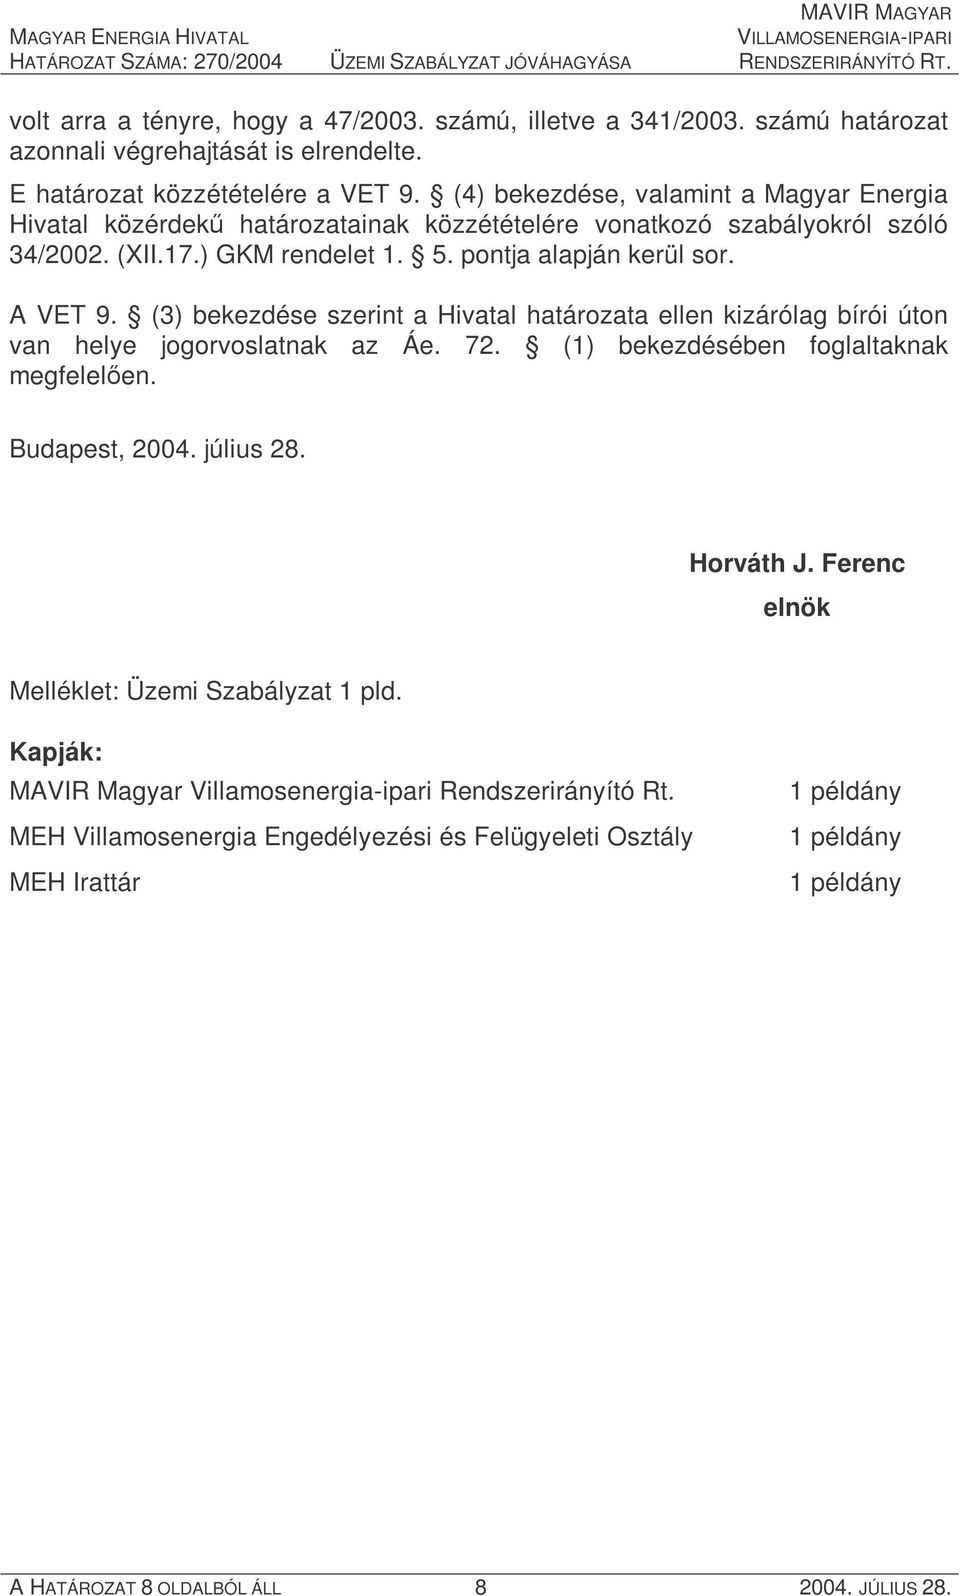 (3) bekezdése szerint a Hivatal határozata ellen kizárólag bírói úton van helye jogorvoslatnak az Áe. 72. (1) bekezdésében foglaltaknak megfelelően. Budapest, 2004. július 28. Horváth J.